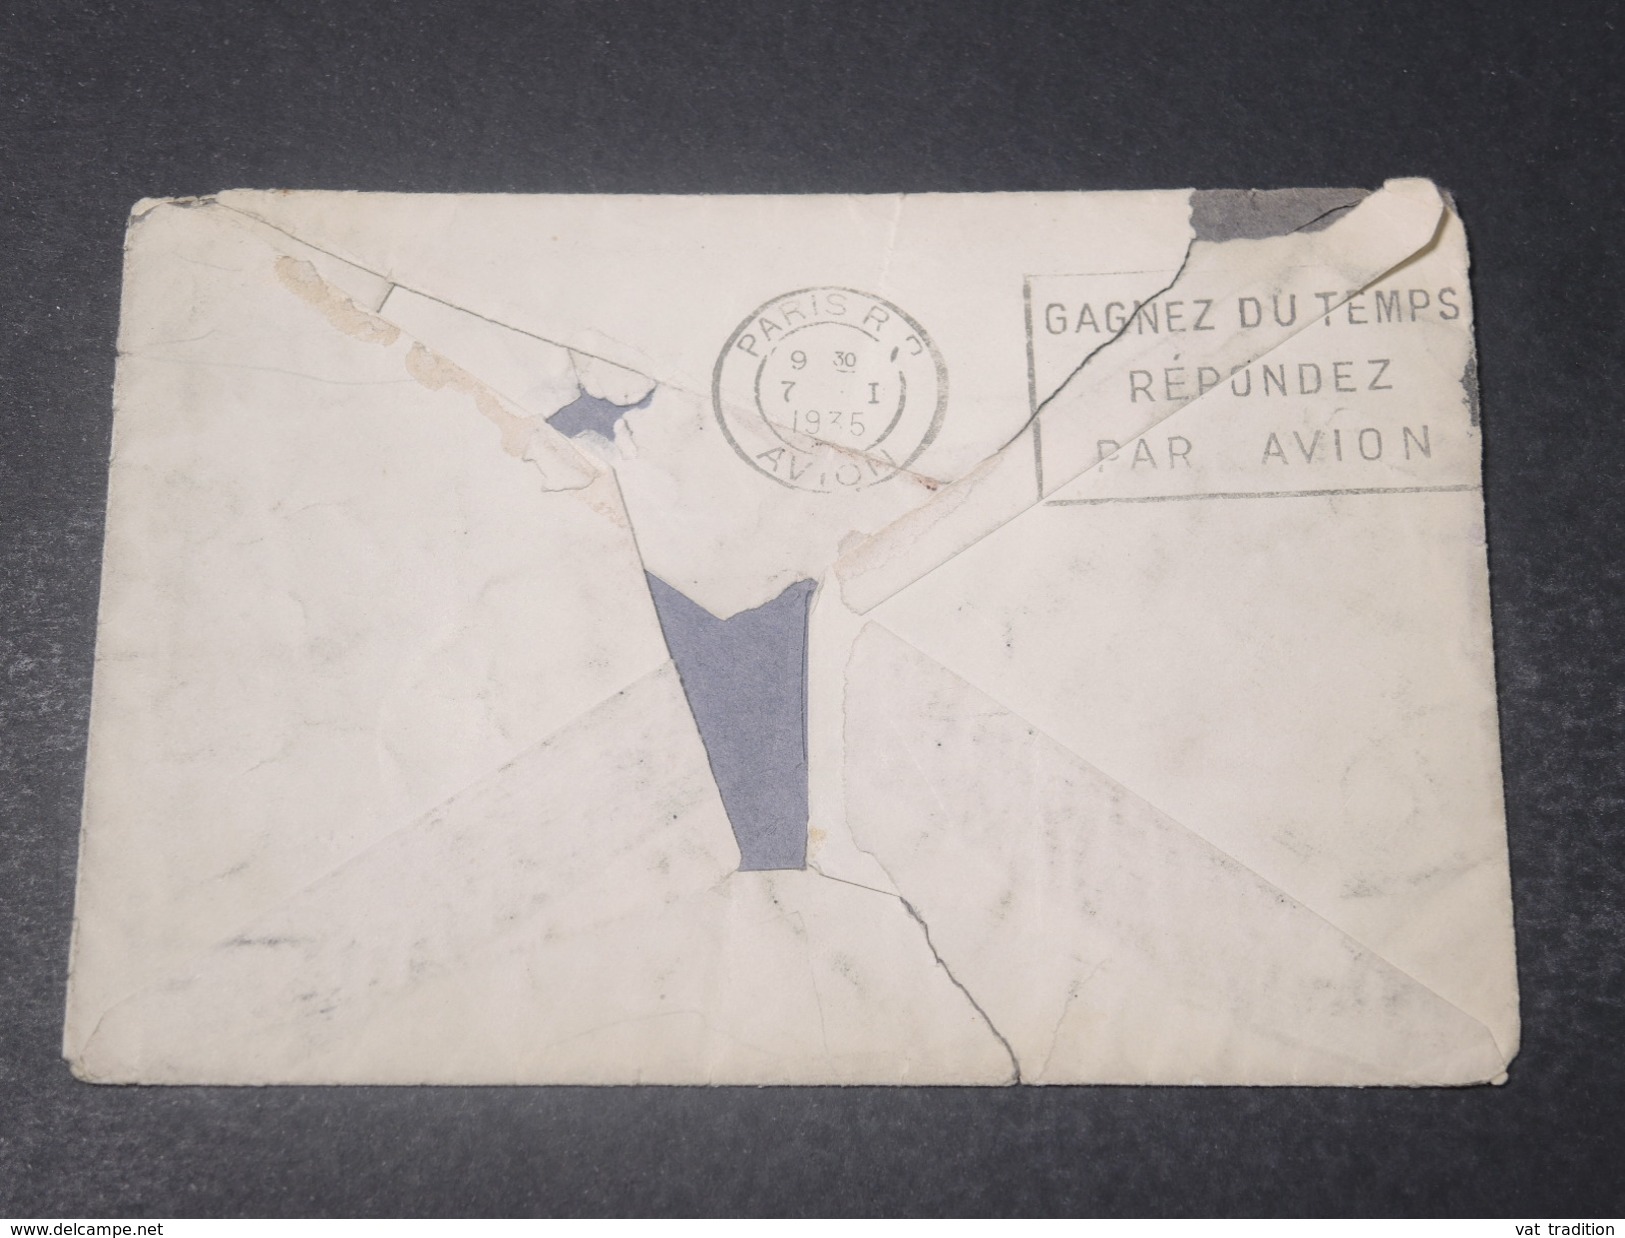 AUSTRALIE - Enveloppe De Sydney  Pour La France En 1935 - L 11048 - Lettres & Documents